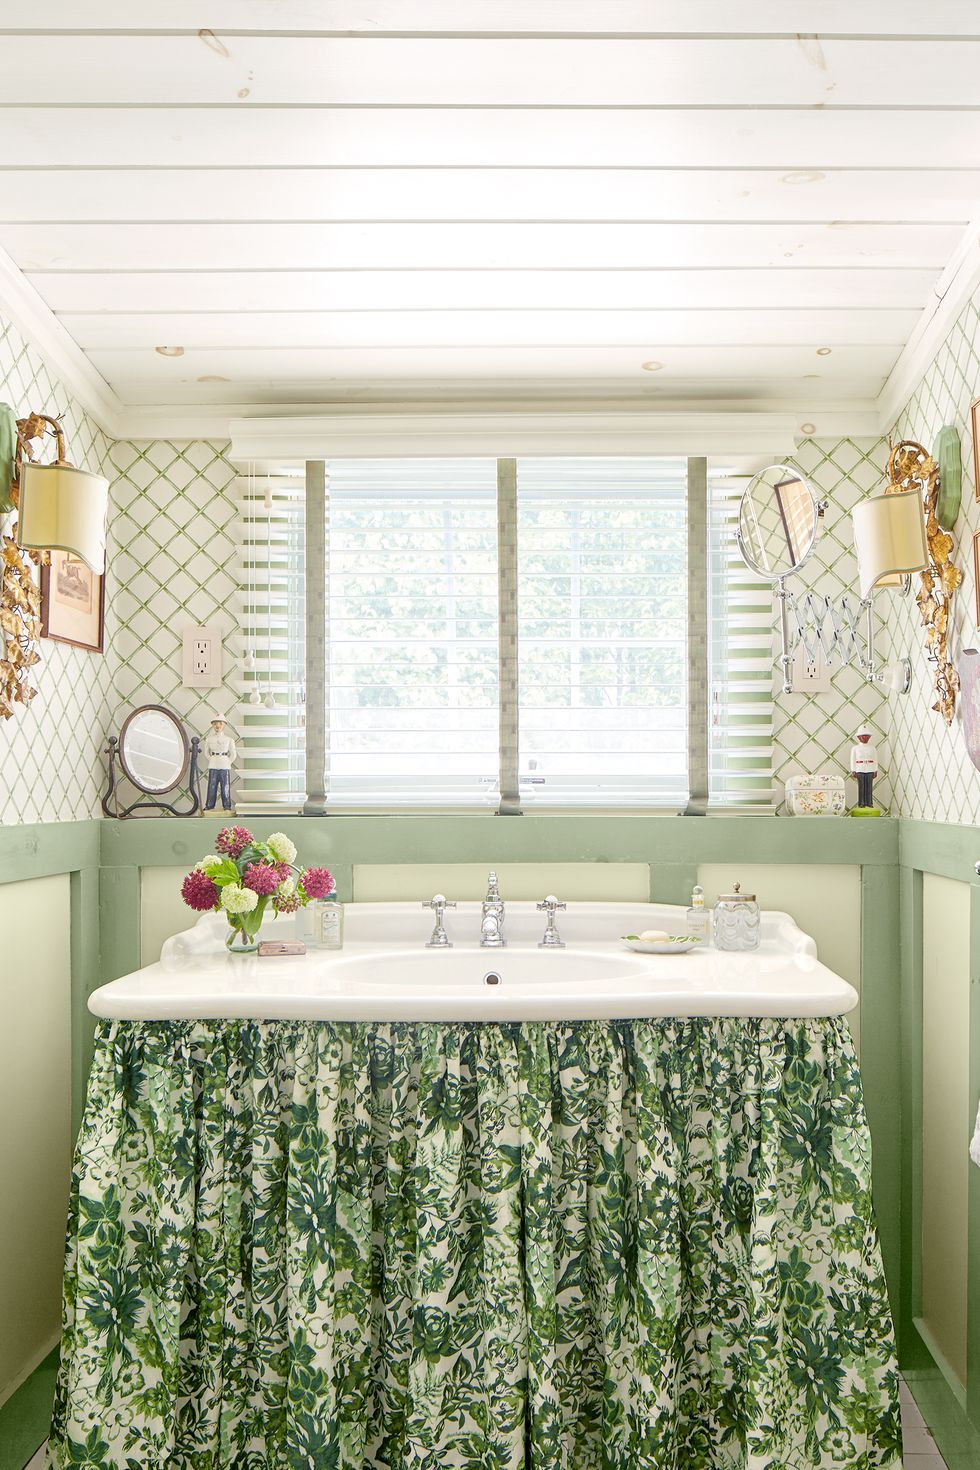 20 Best Farmhouse Bathroom Design Ideas Farmhouse Bathroom Decor